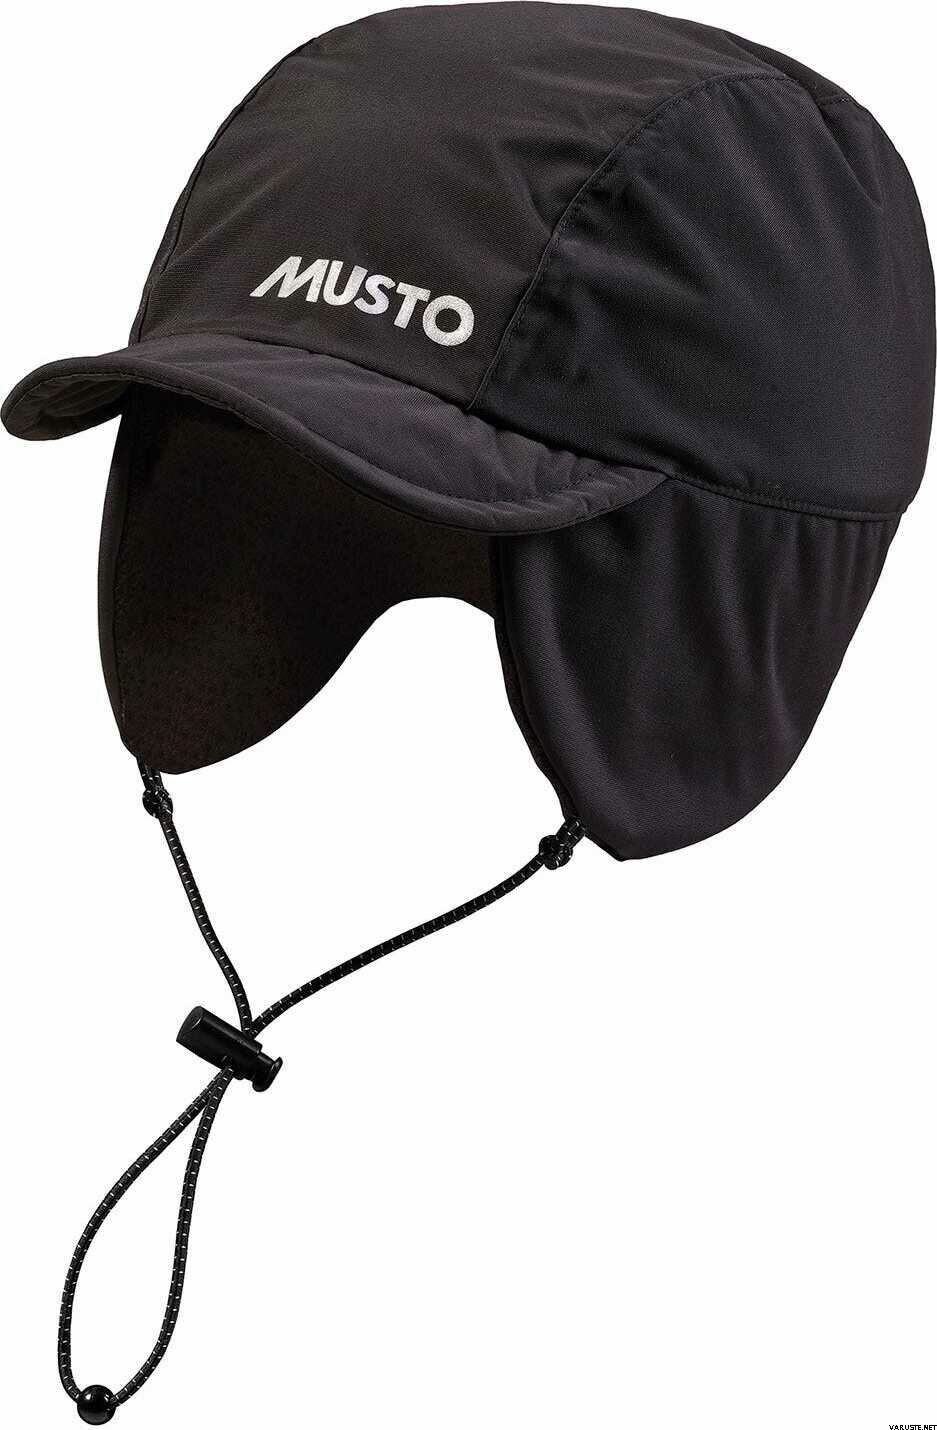 Musto MPX Fleece Lined WP Cap | Fur hats | Varuste.net English